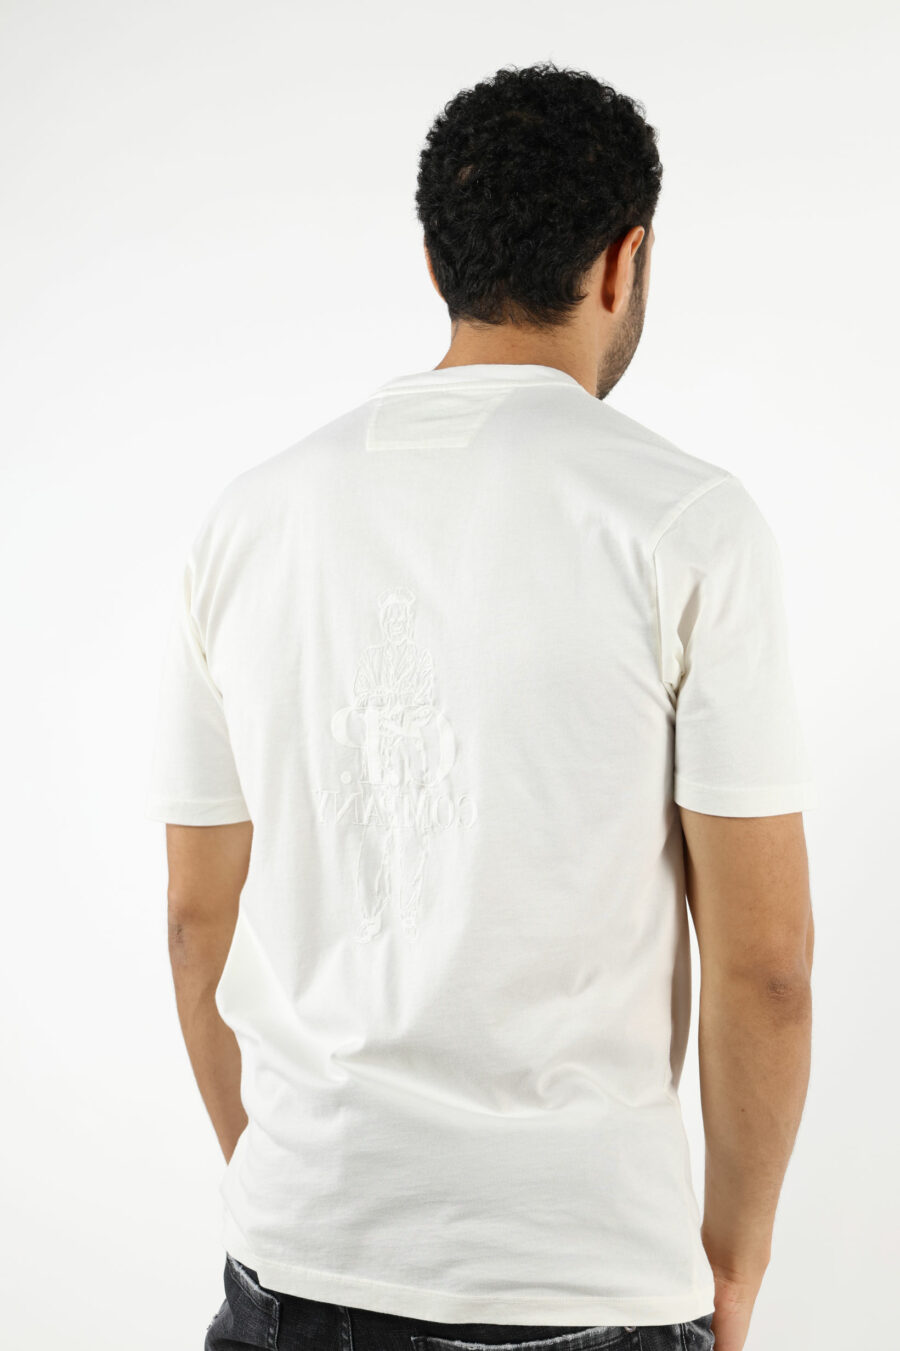 T-shirt branca com maxilogue de marinheiro e logótipo "cp" - 111301